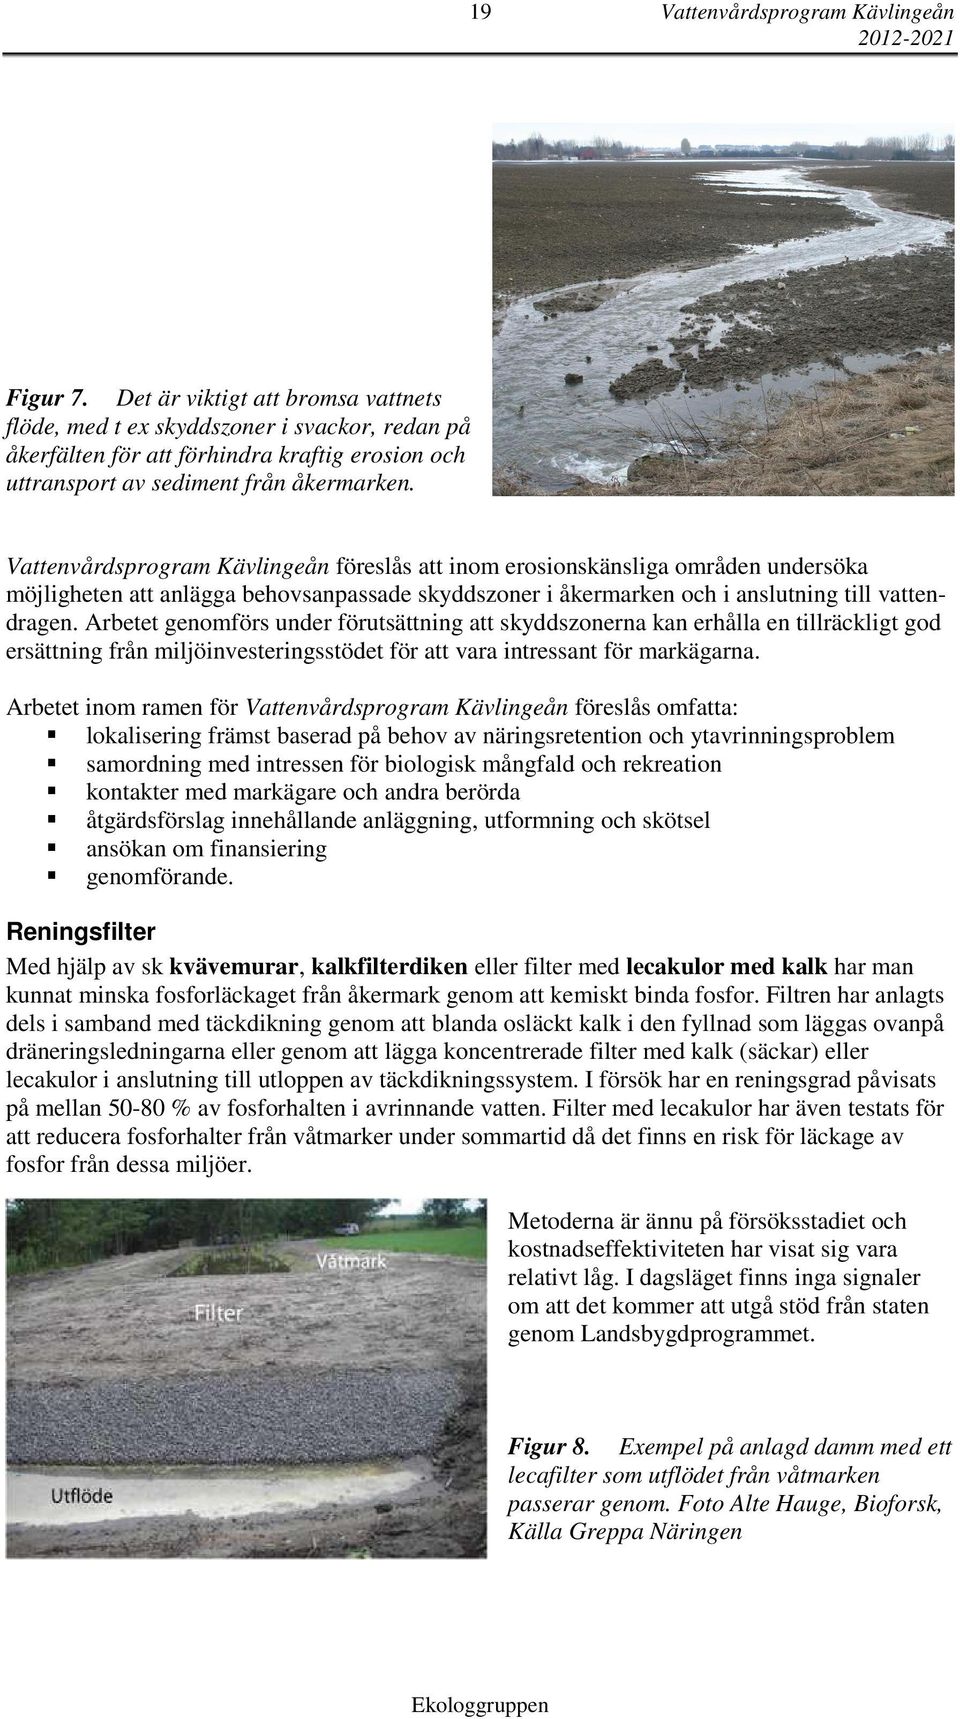 Vattenvårdsprogram Kävlingeån föreslås att inom erosionskänsliga områden undersöka möjligheten att anlägga behovsanpassade skyddszoner i åkermarken och i anslutning till vattendragen.